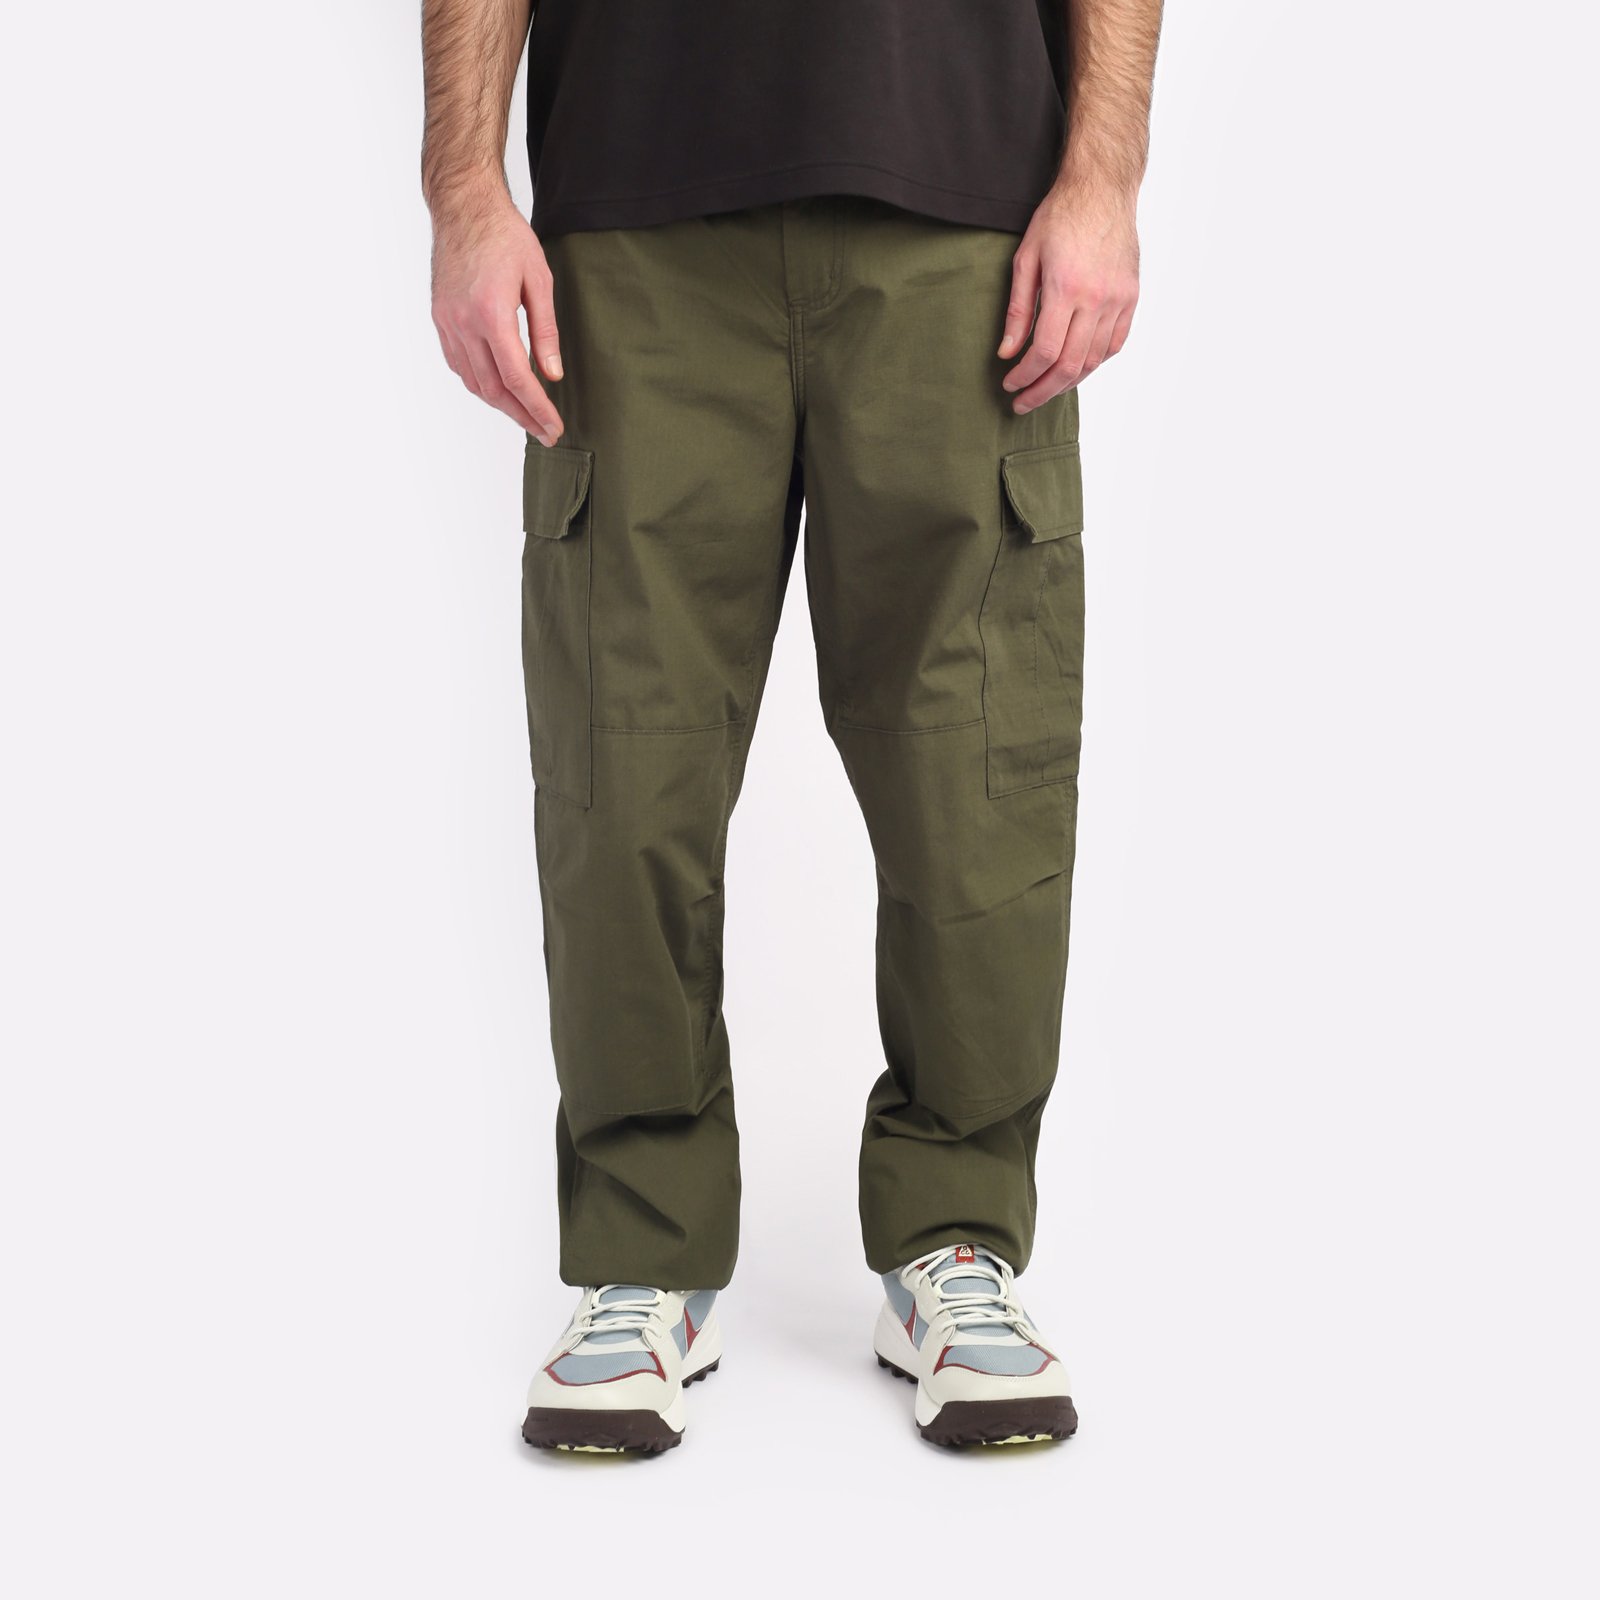 мужские брюки Carhartt WIP Regular Cargo Pant  (I032467-cypress)  - цена, описание, фото 1